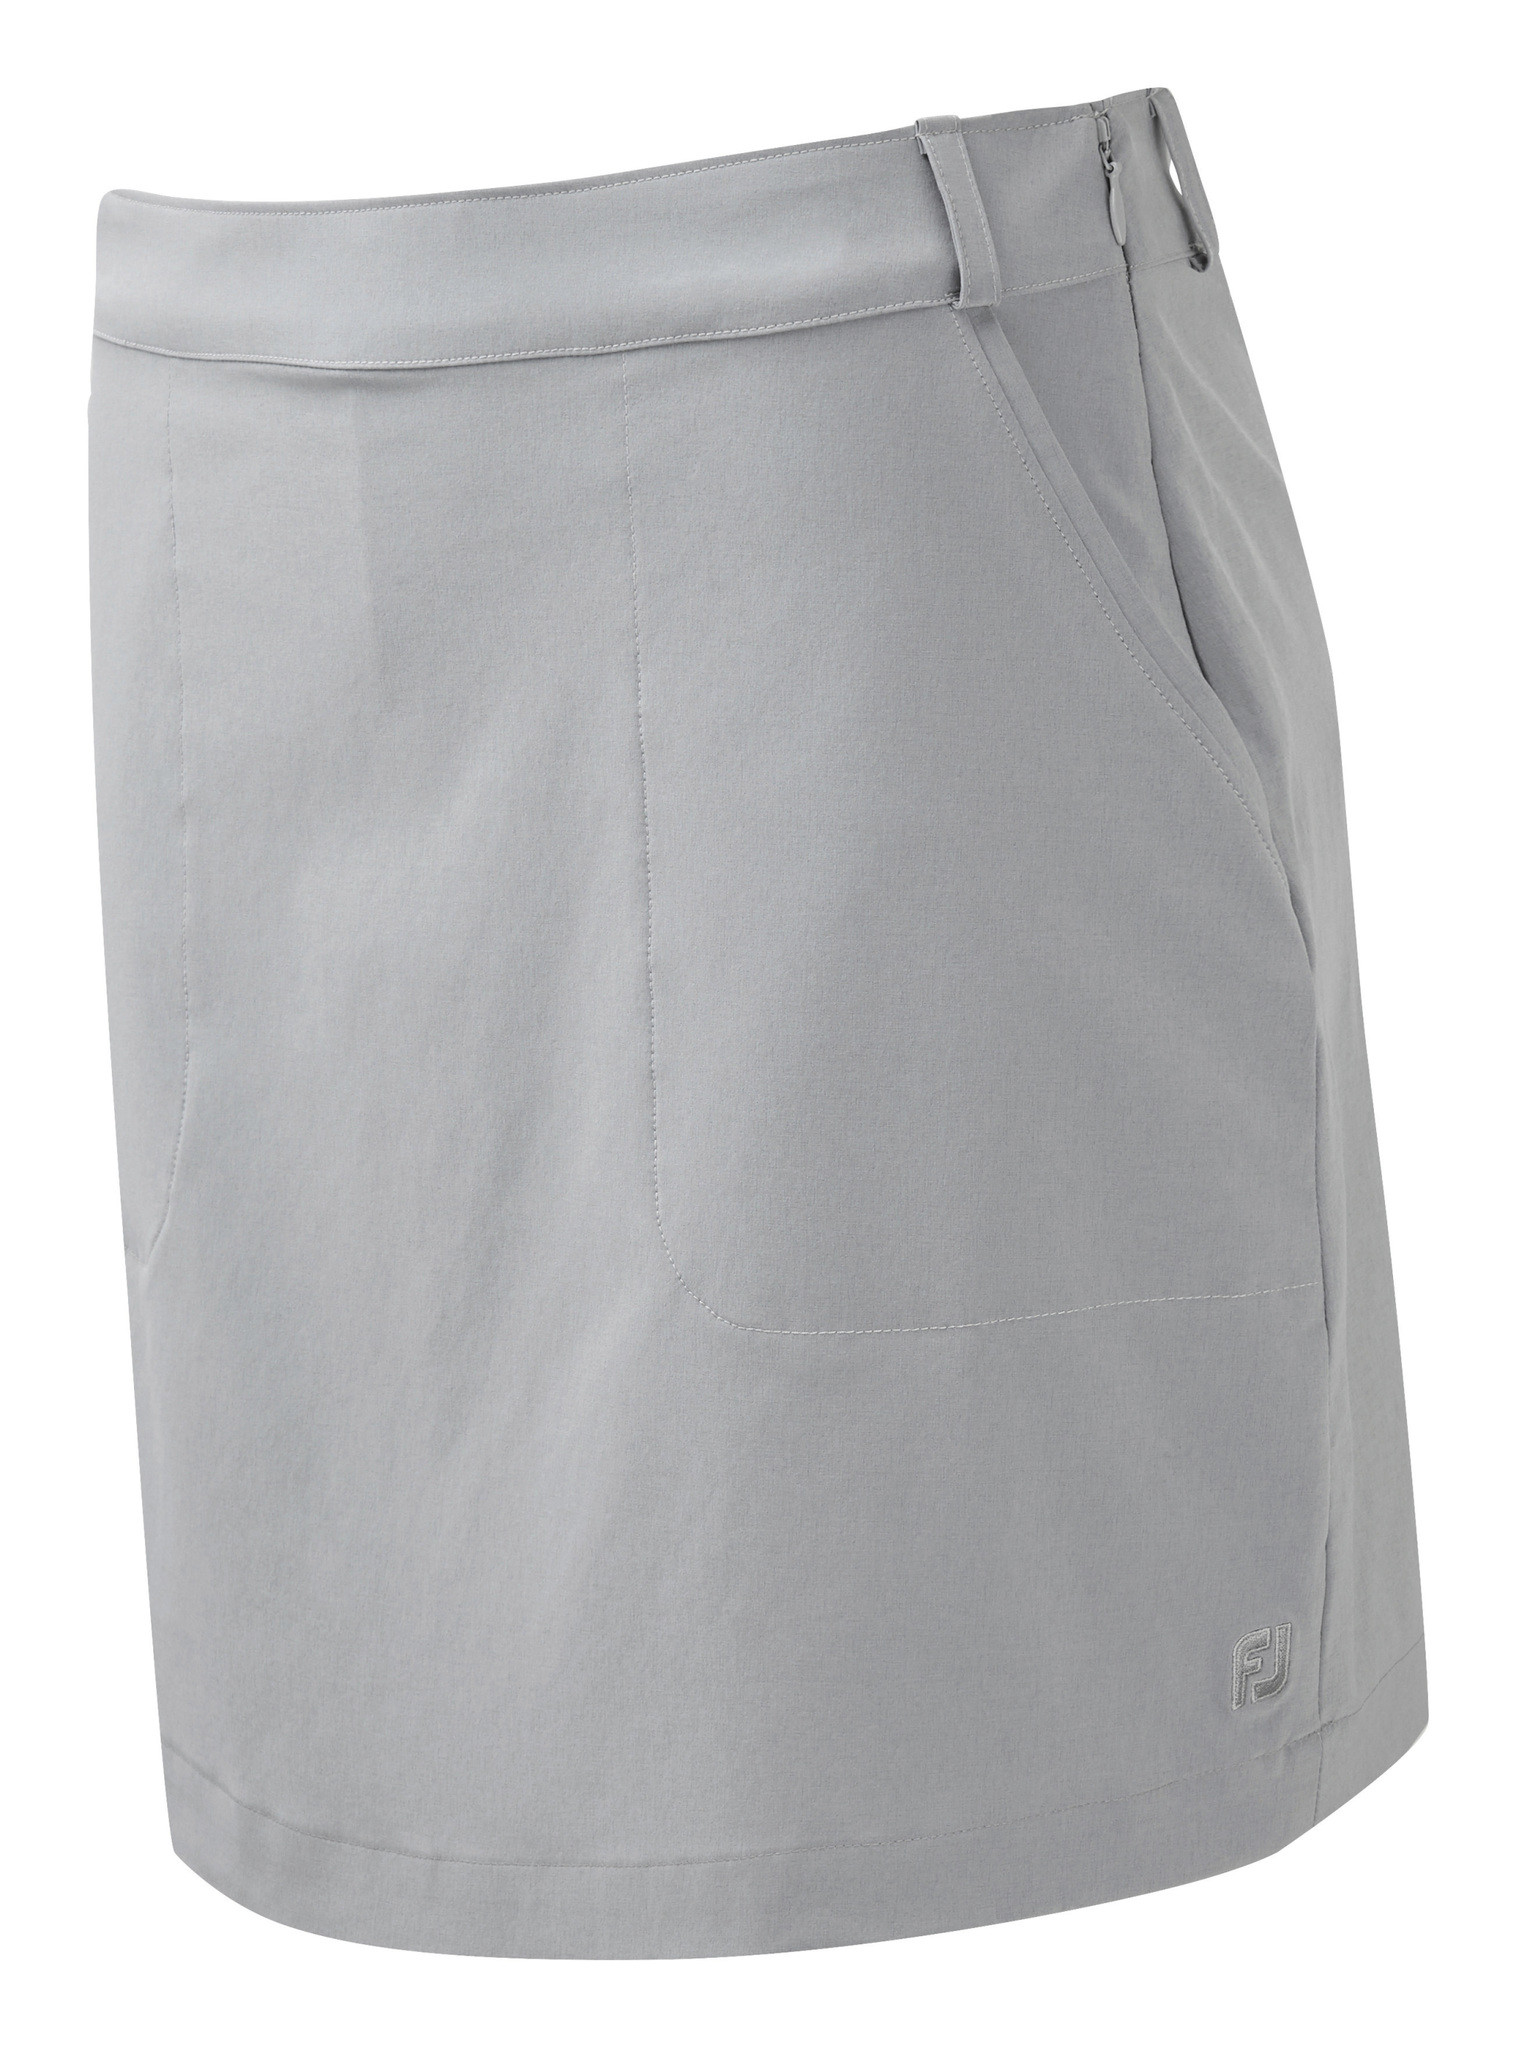 FootJoy Women's GolfLeisure Lightweight Woven Skort Grey, Dresses & Skirts